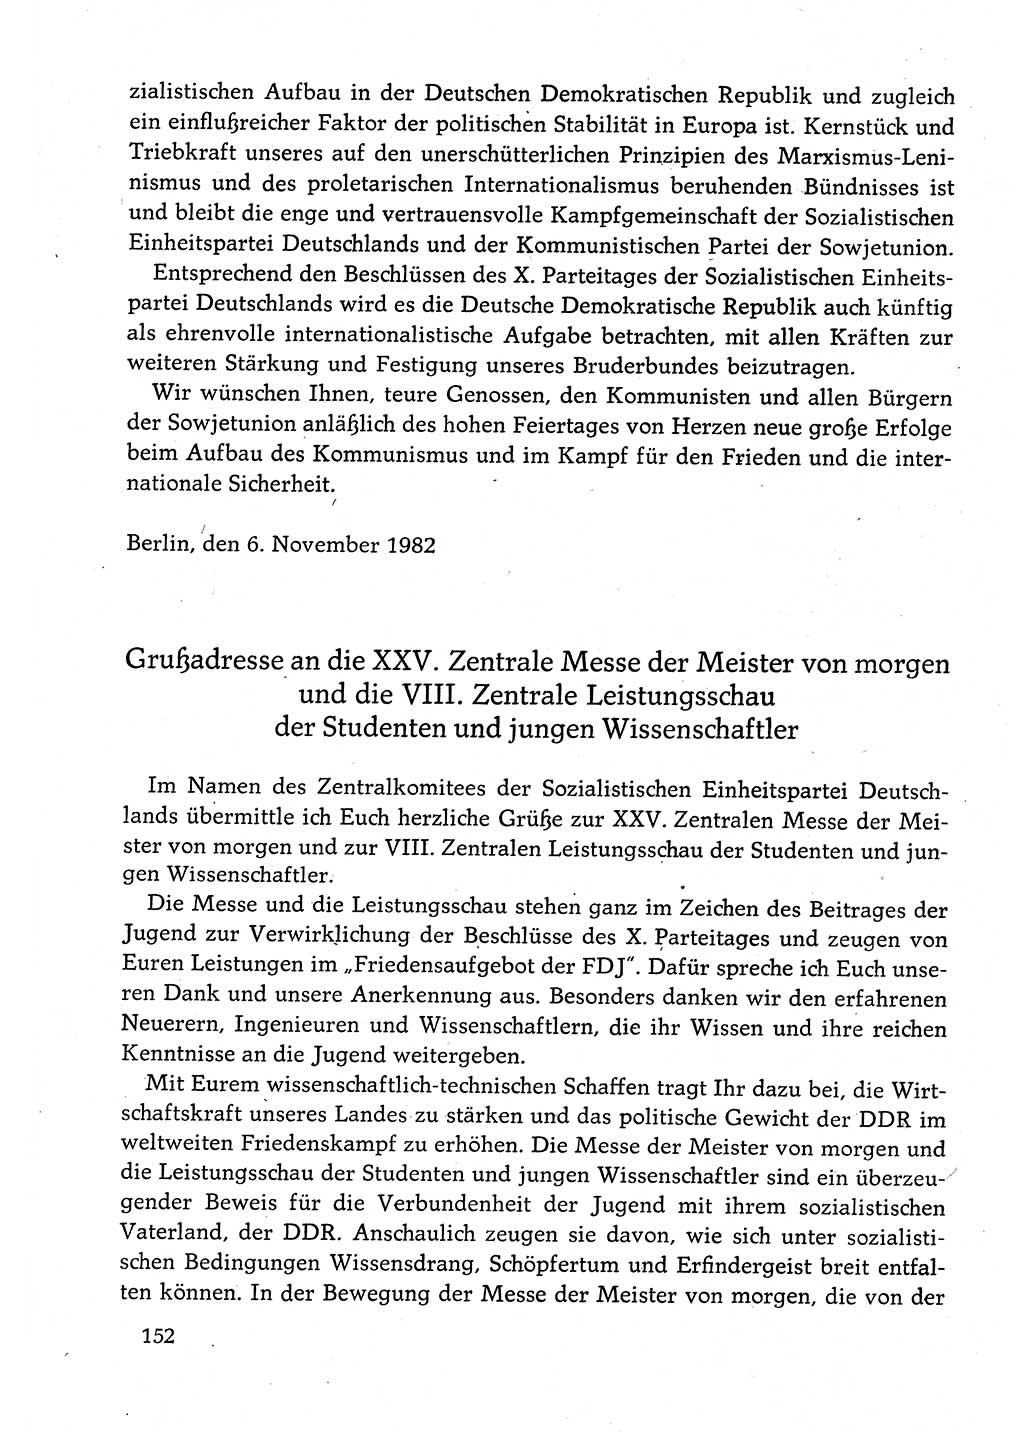 Dokumente der Sozialistischen Einheitspartei Deutschlands (SED) [Deutsche Demokratische Republik (DDR)] 1982-1983, Seite 152 (Dok. SED DDR 1982-1983, S. 152)